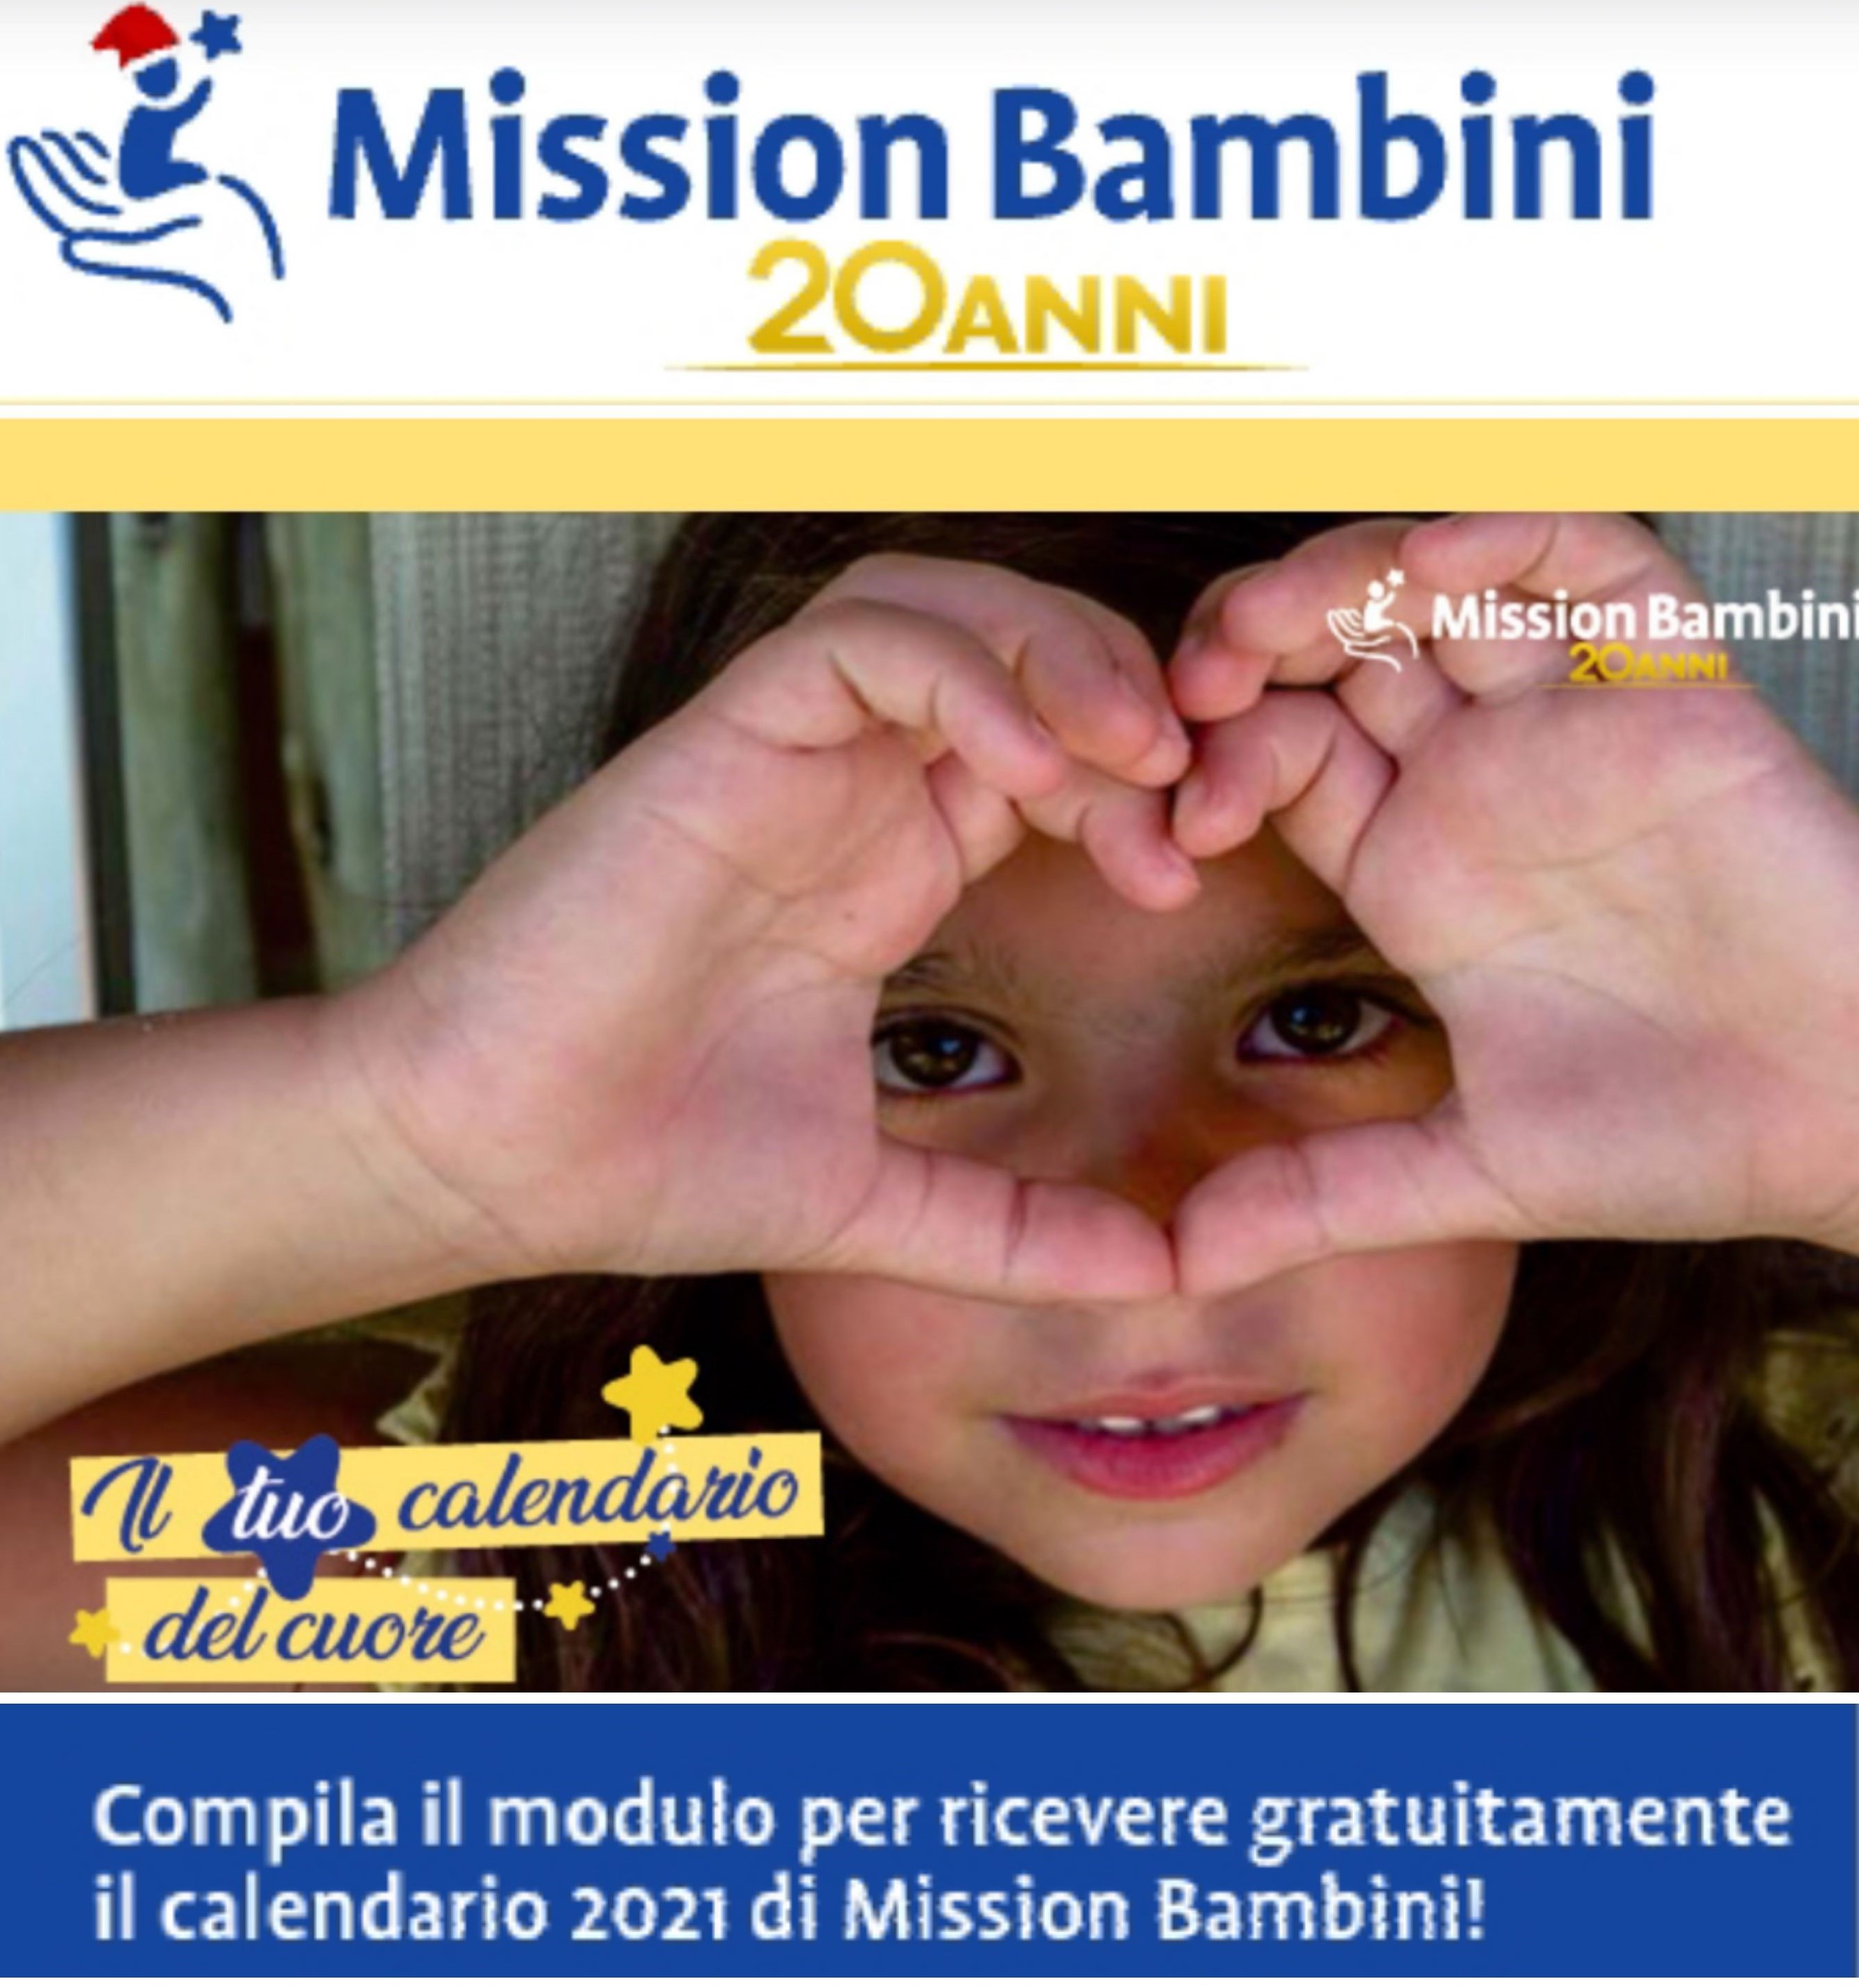 Il Calendario del Cuore di Mission Bambini in  OMAGGIO